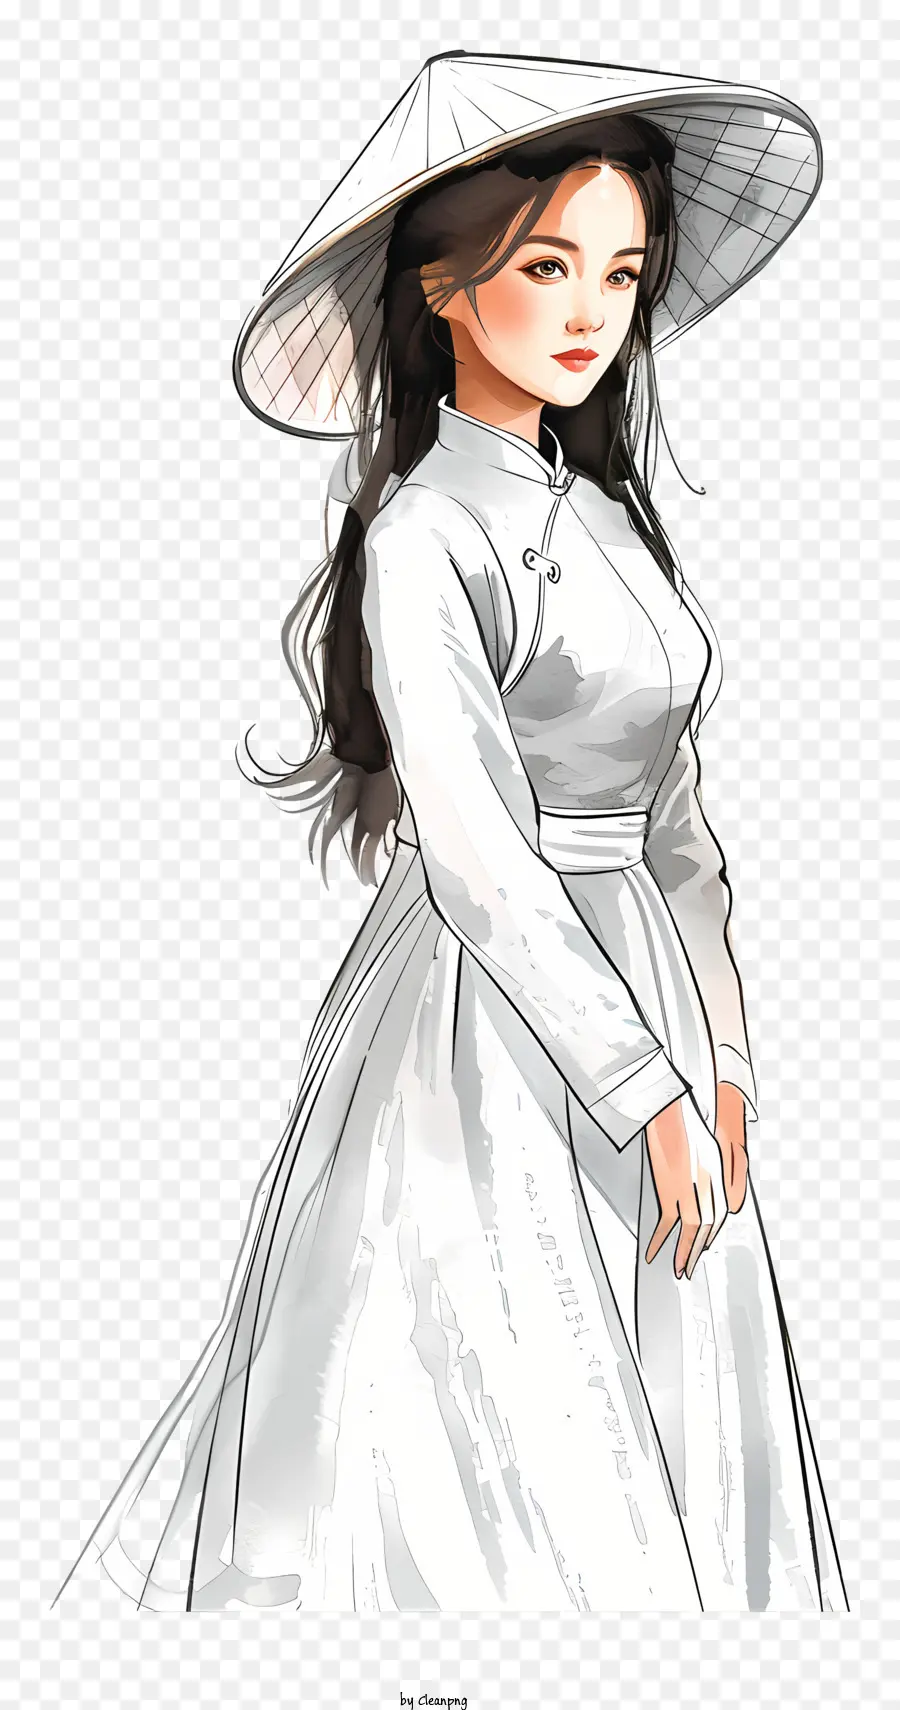 ao dai weißes kleid mit breiterem Hut lange schwarze Haare lächeln - Frau in weißem Kleid und breitem Hut lächeln